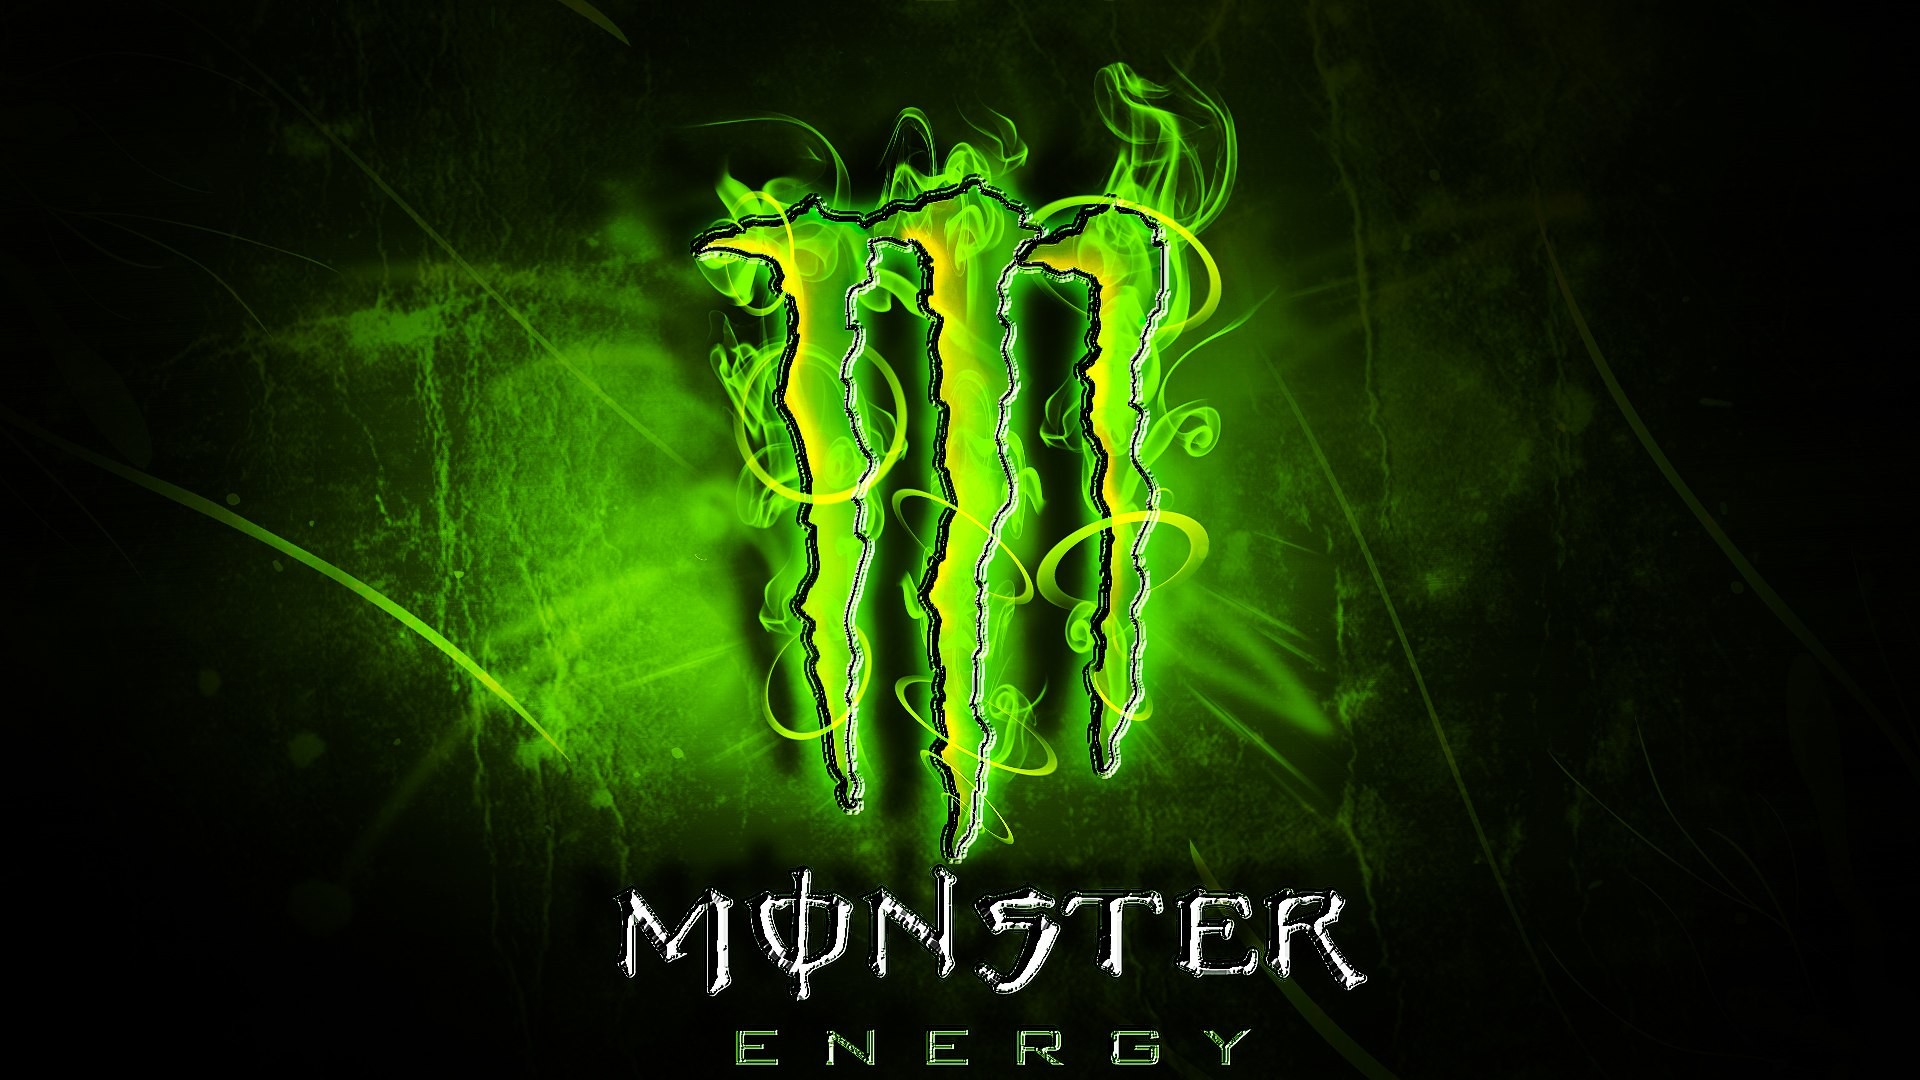 blue monster energy drink wallpaper